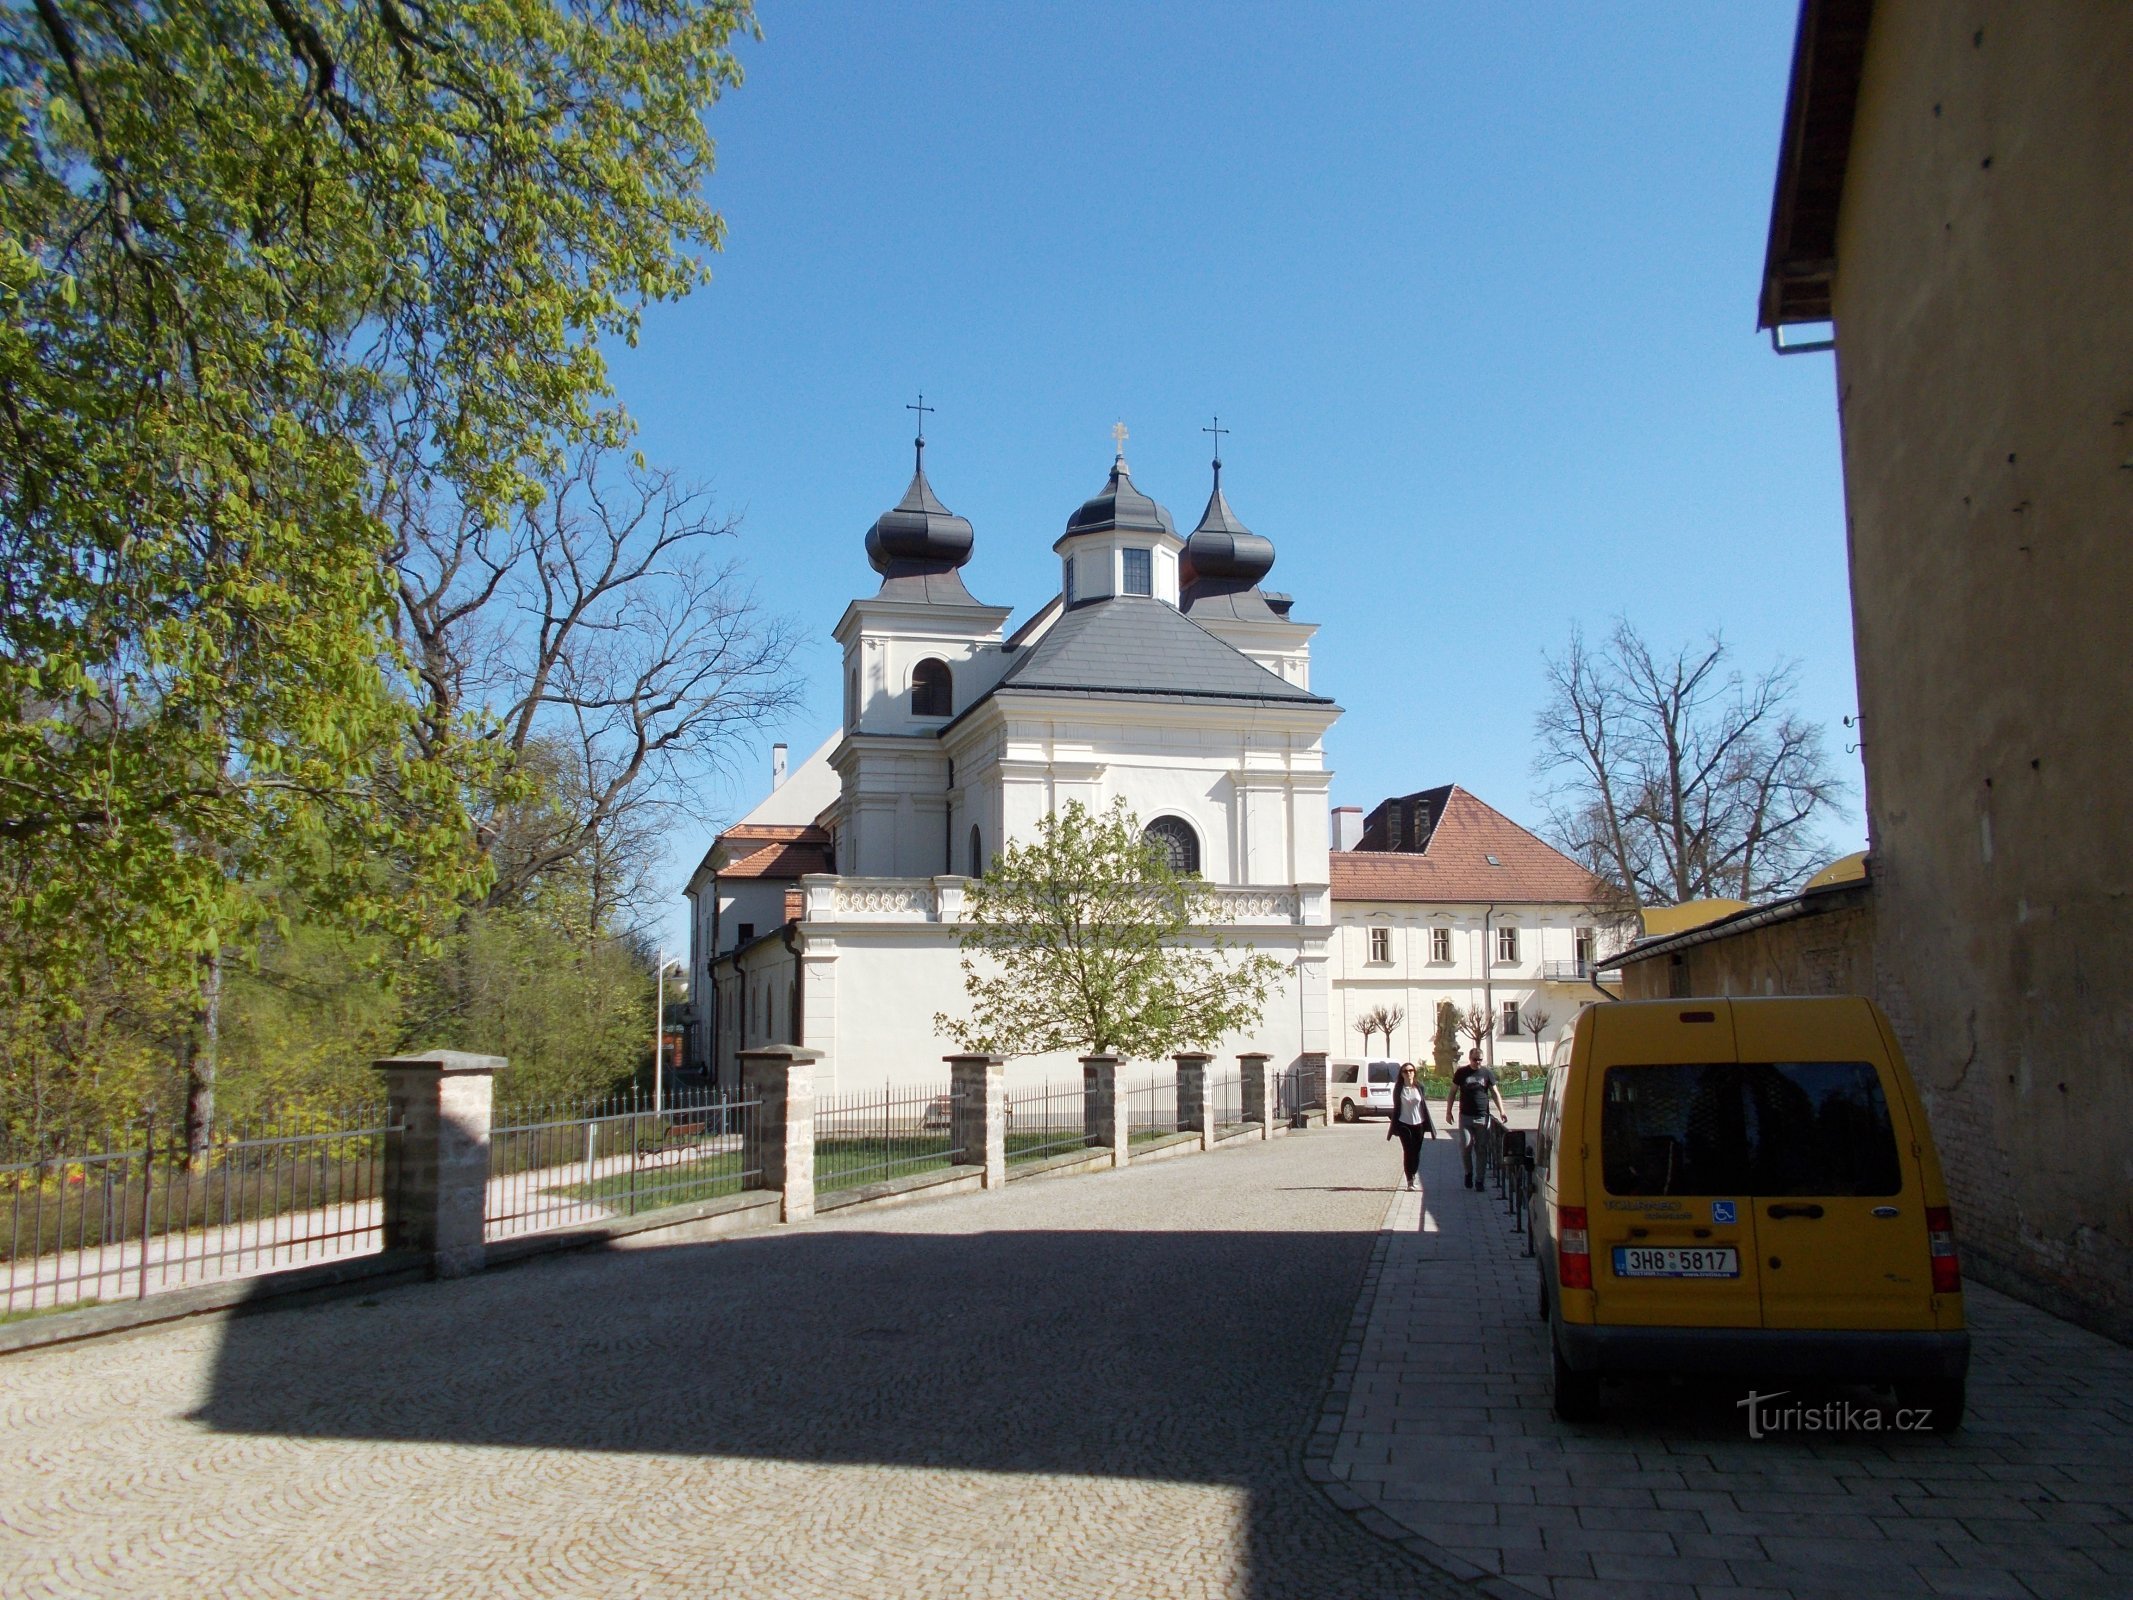 Žireč - church of St. Anne